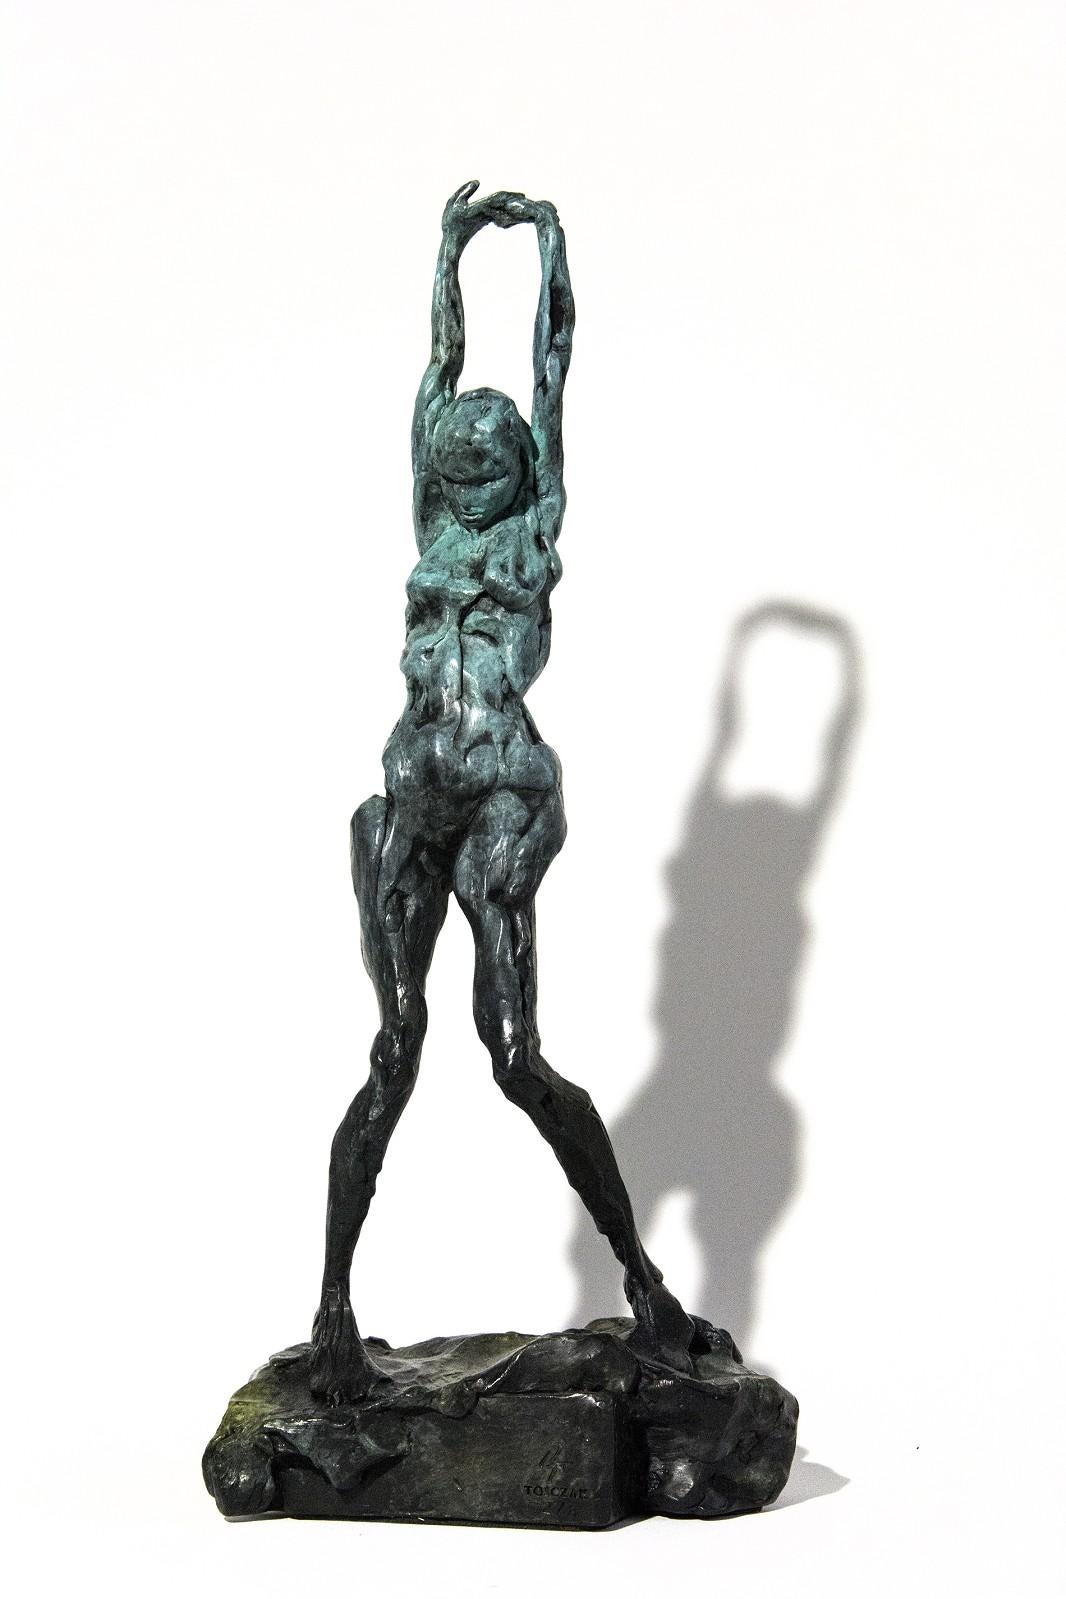 Richard Tosczak Figurative Sculpture - The Pleiades-Asterope 3/8 - emotive, nude, female, figurative, bronze statuette